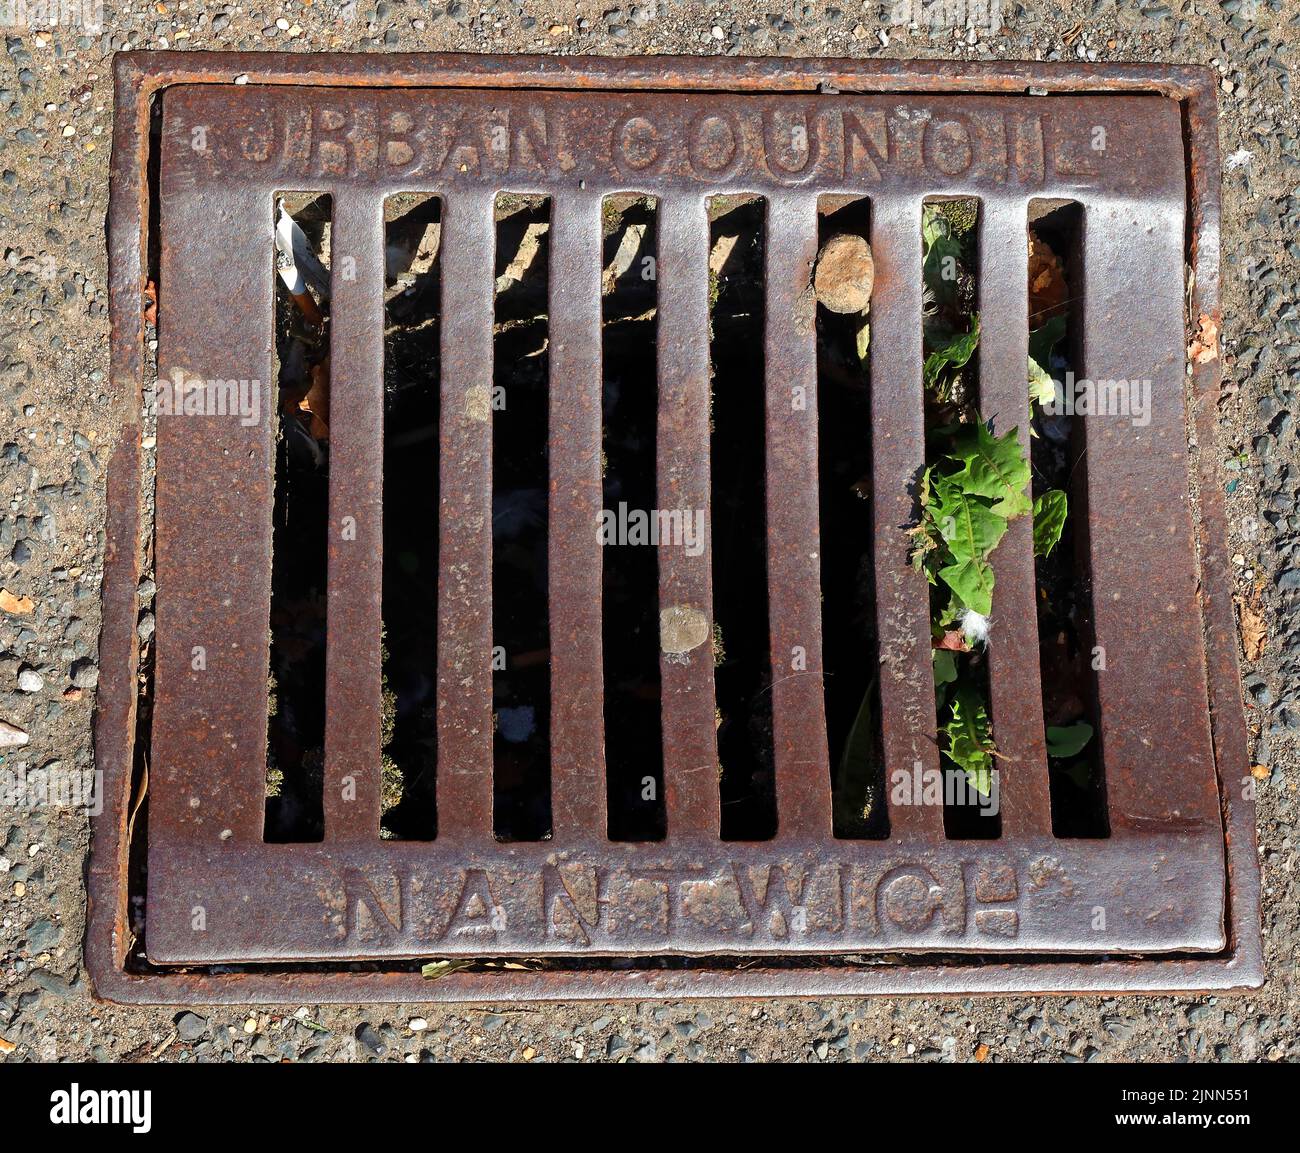 Réseau de drainage de rue de fer, Nantwich, Cheshire, Angleterre, Royaume-Uni - a marqué Nantwich Urban District Council Banque D'Images